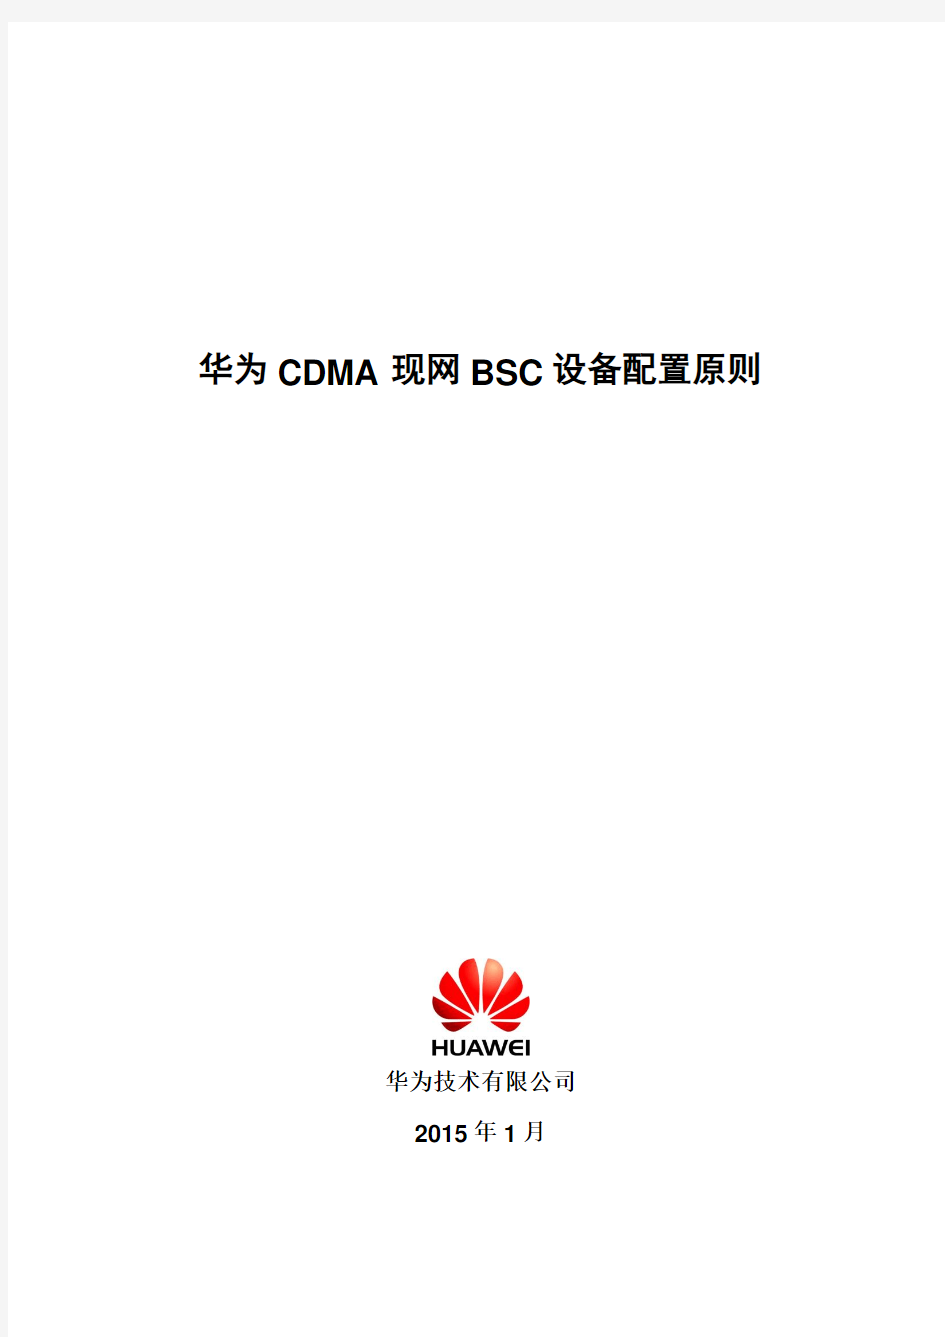 华为现网CDMA+BSC配置原则